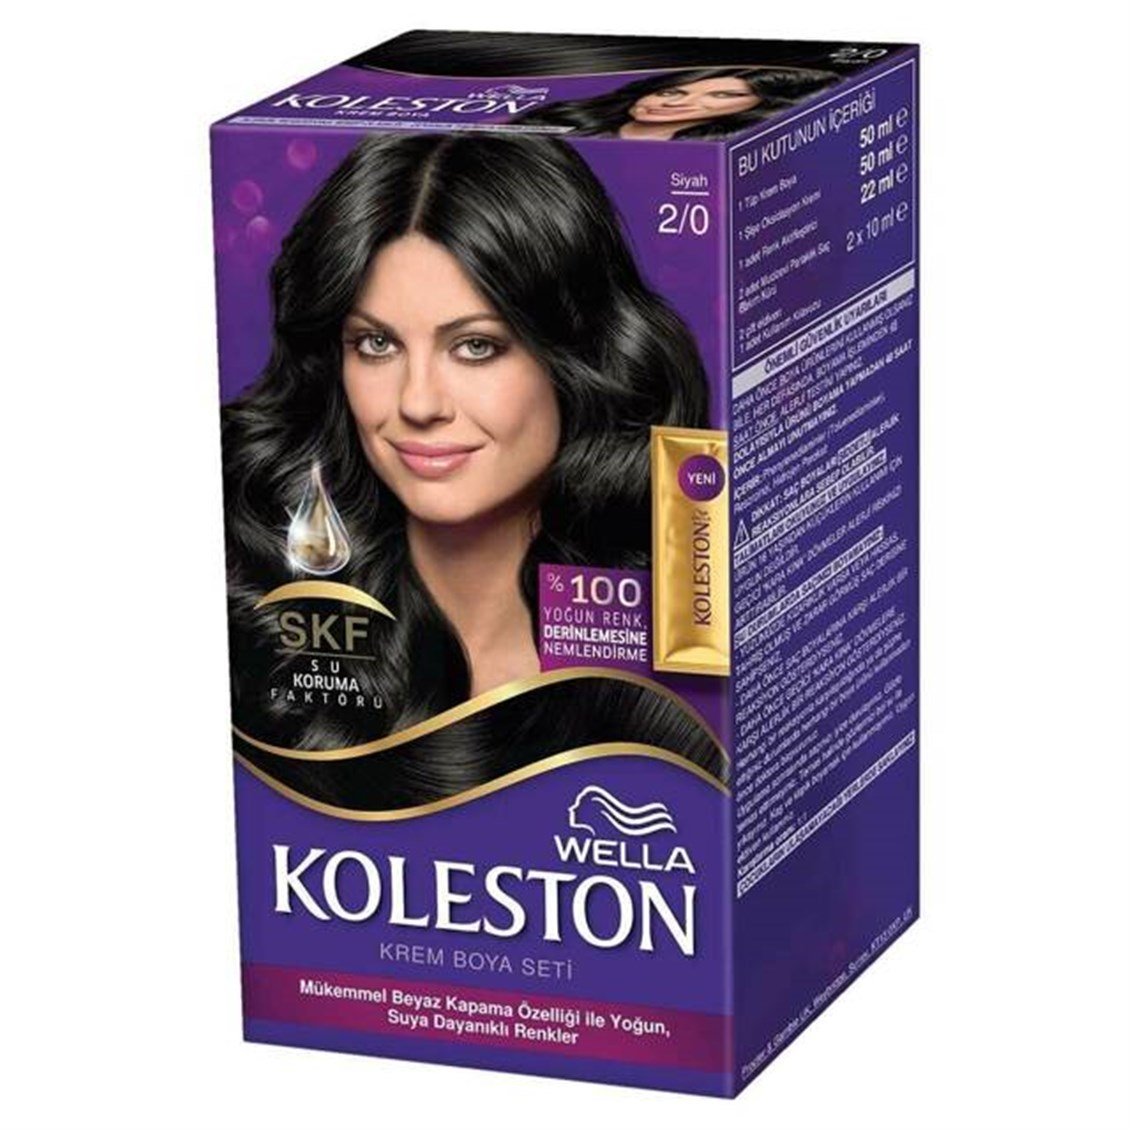 Koleston Wella Kit 2/0 Siyah Saç Boyası - Onur Market